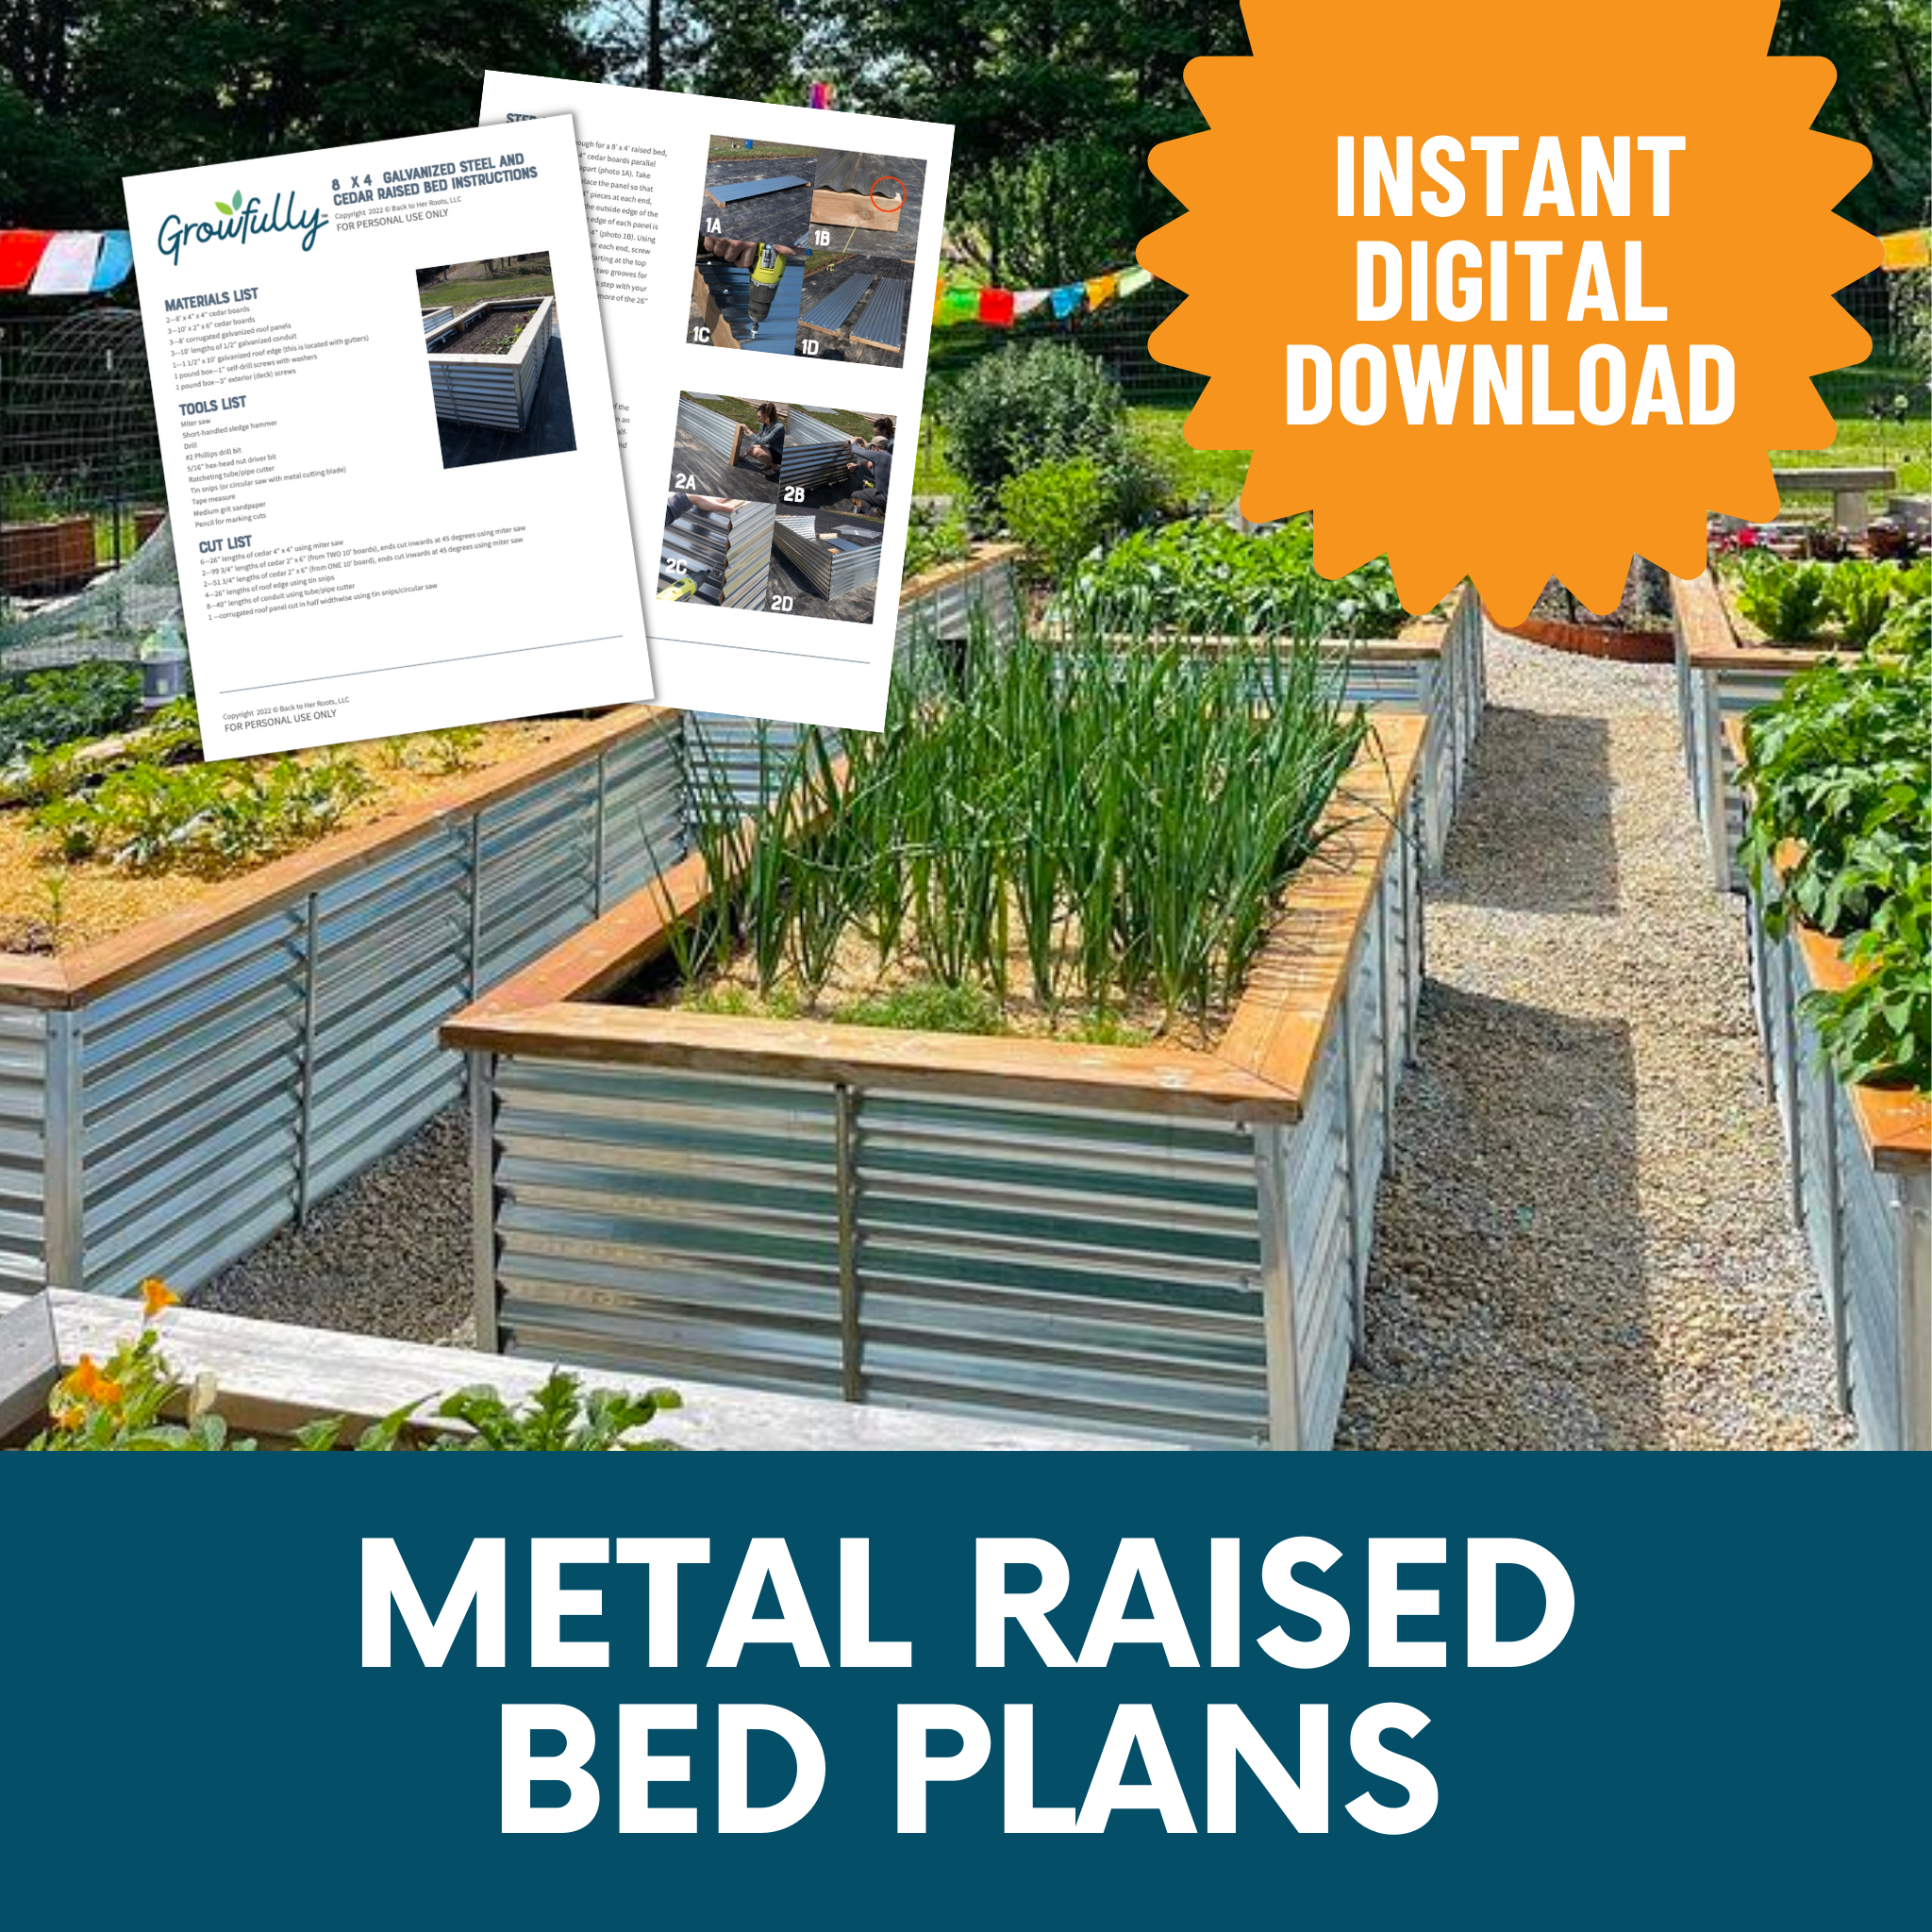 Metal Raised Bed Plans—Steel Gardening Beds DIY